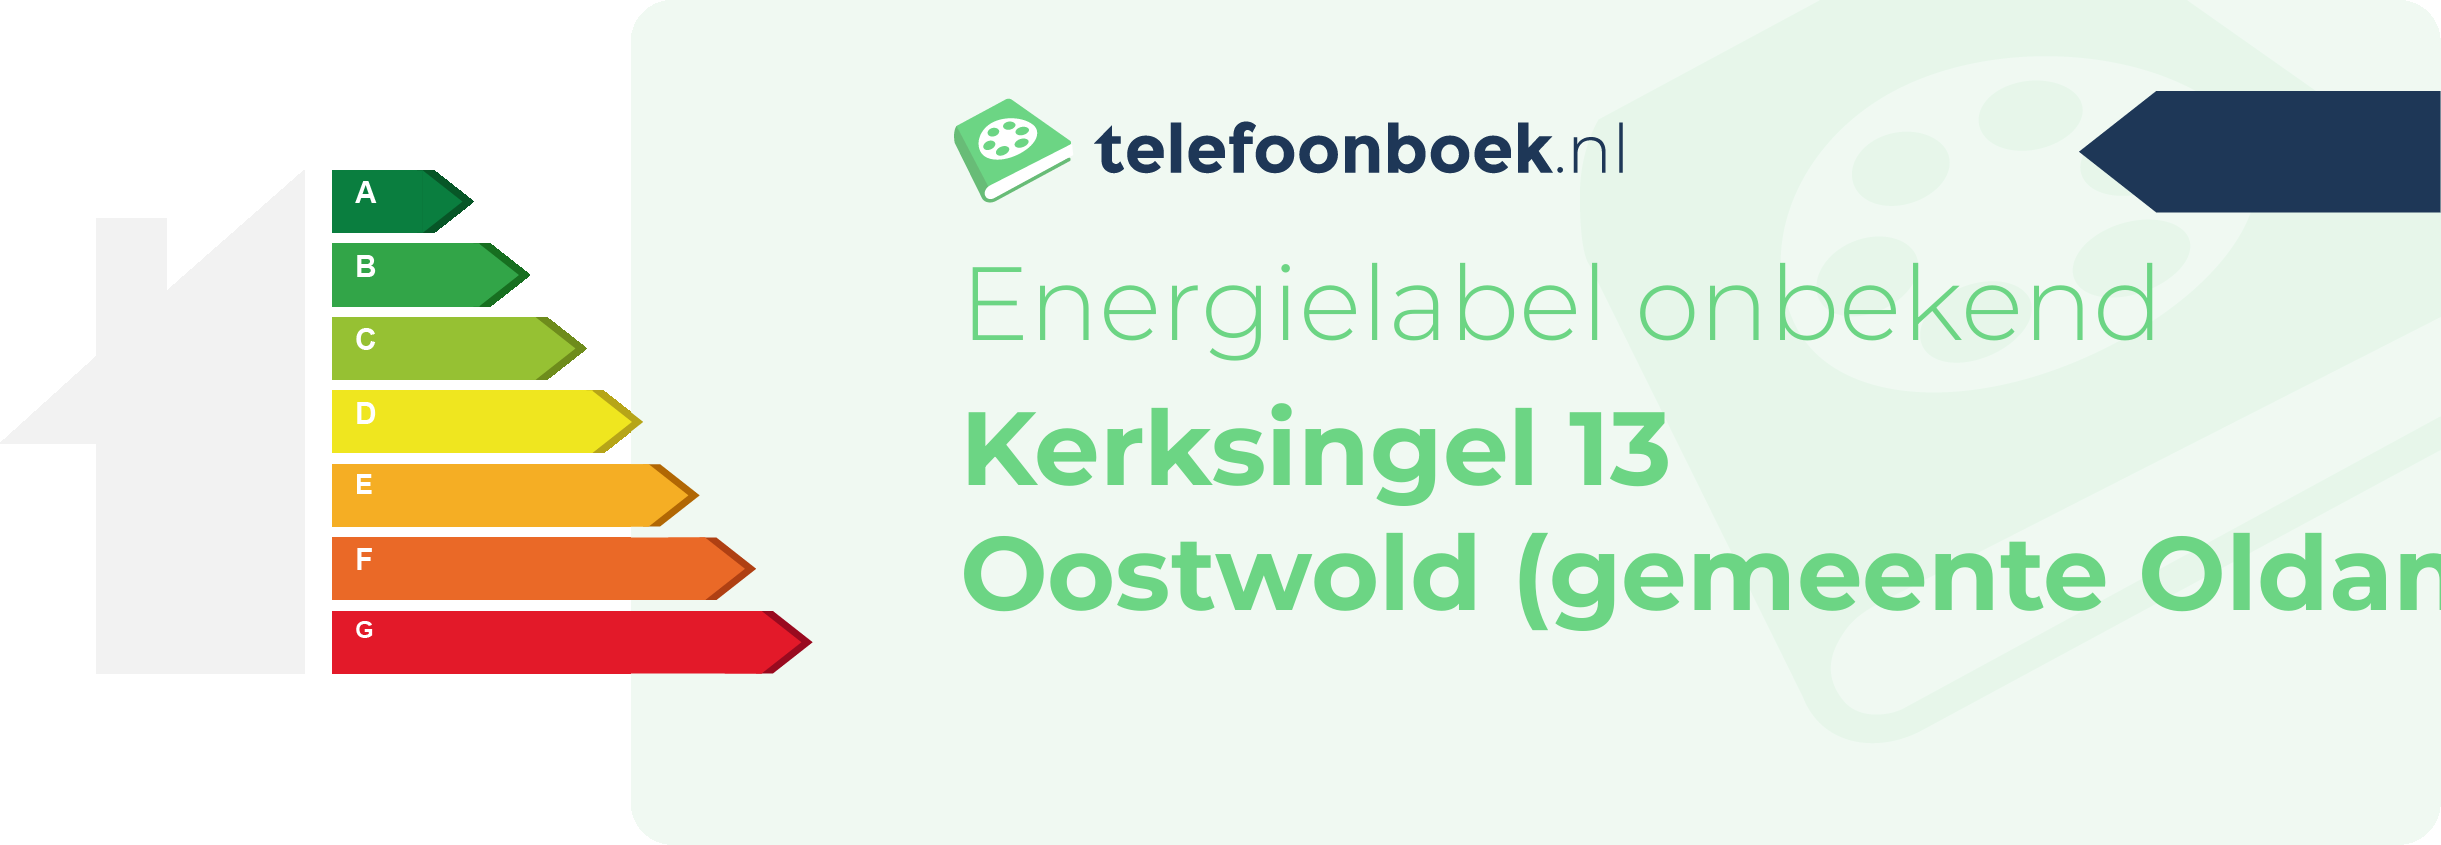 Energielabel Kerksingel 13 Oostwold (gemeente Oldambt Groningen)